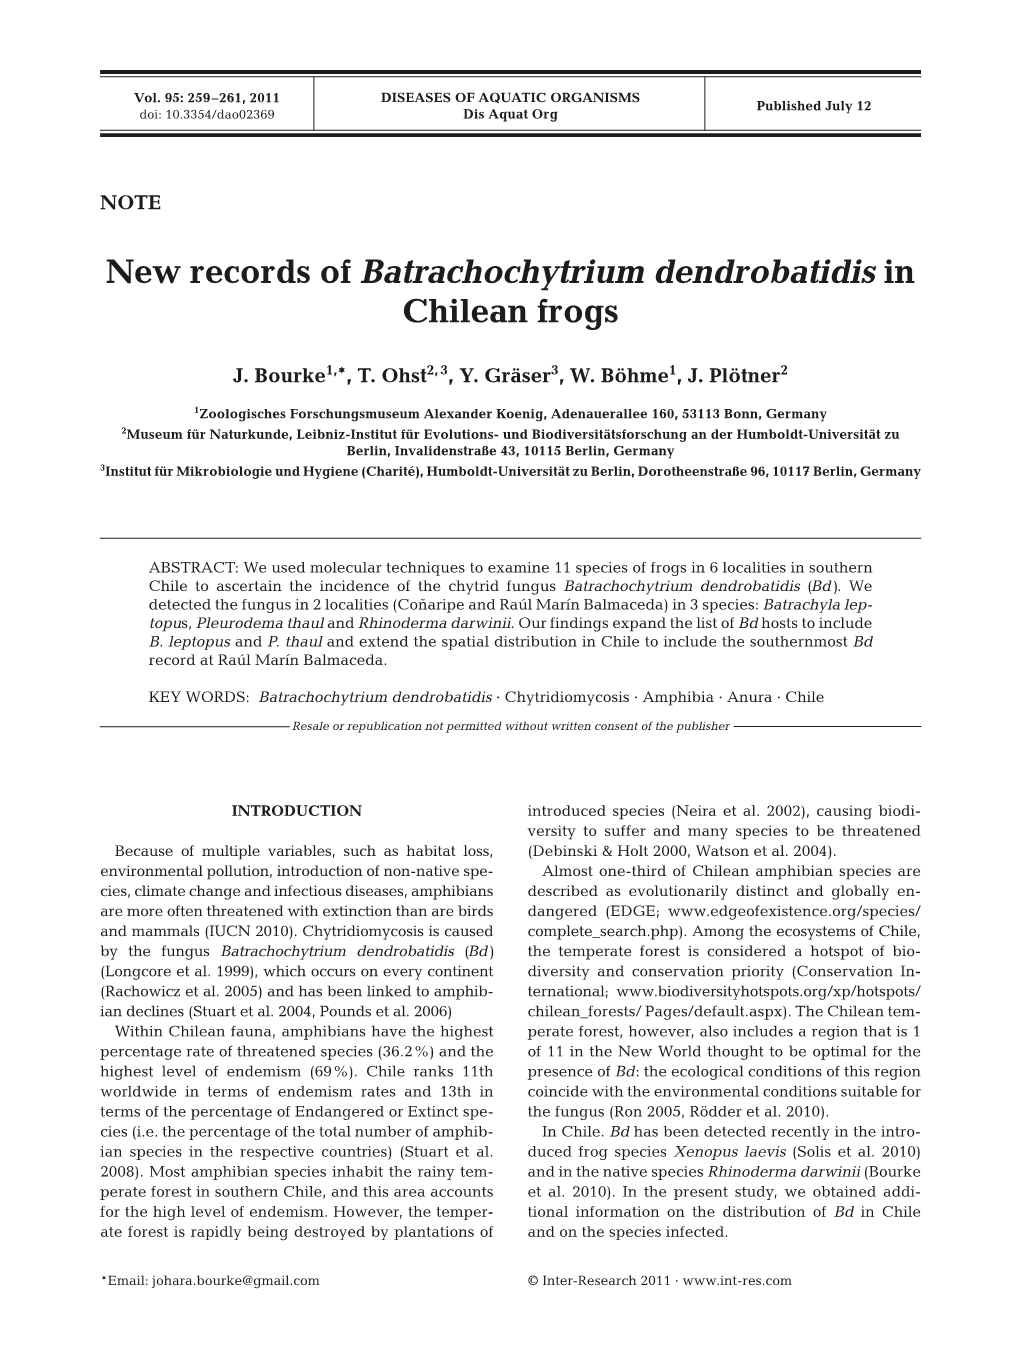 New Records of Batrachochytrium Dendrobatidis in Chilean Frogs